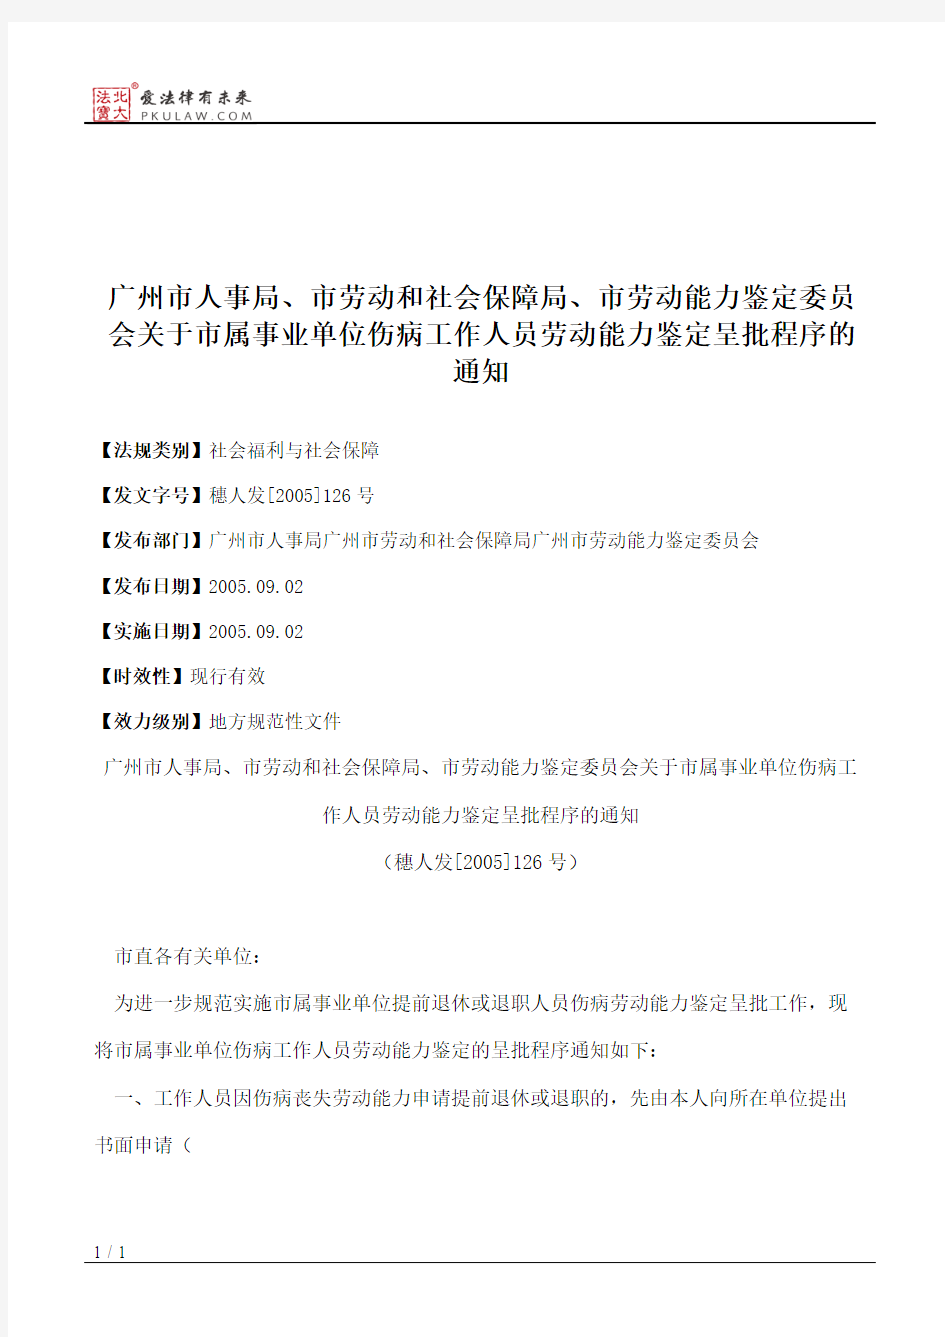 广州市人事局、市劳动和社会保障局、市劳动能力鉴定委员会关于市